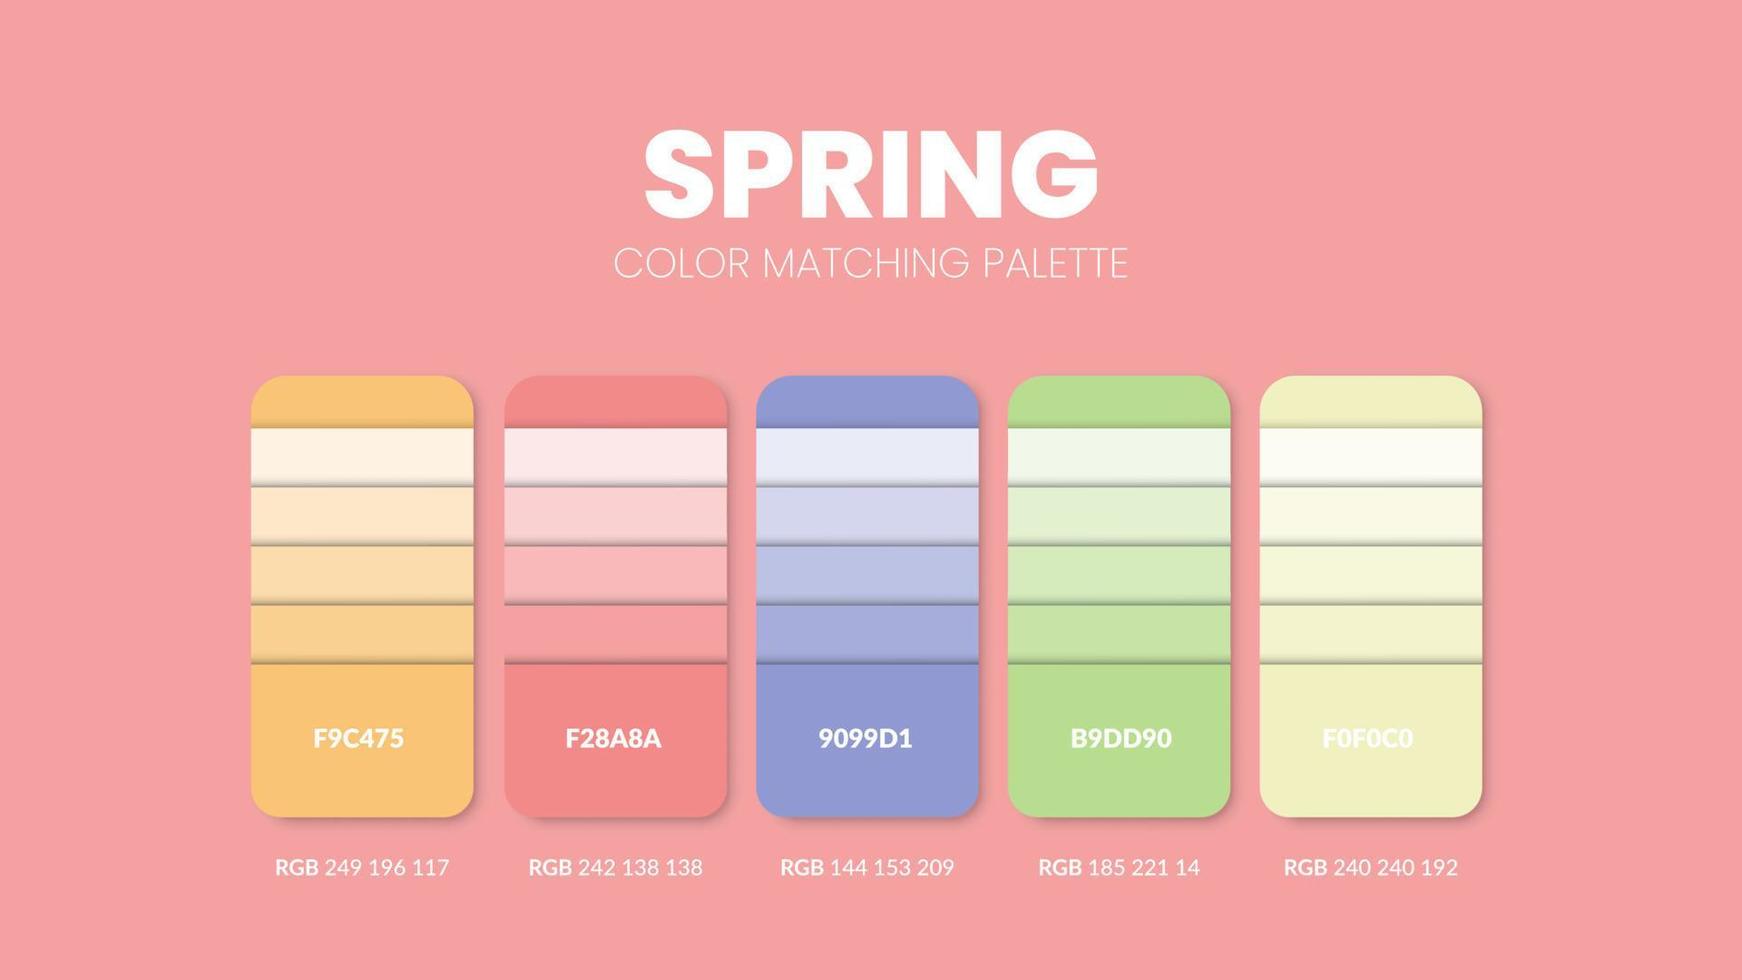 Las paletas de colores del tema de la primavera o los esquemas de colores son combinaciones de tendencias y guías de paletas de este año, una tabla de tonos de colores en rgb o hexadecimal. una muestra de color para una moda de primavera, un hogar o un diseño de interiores. vector